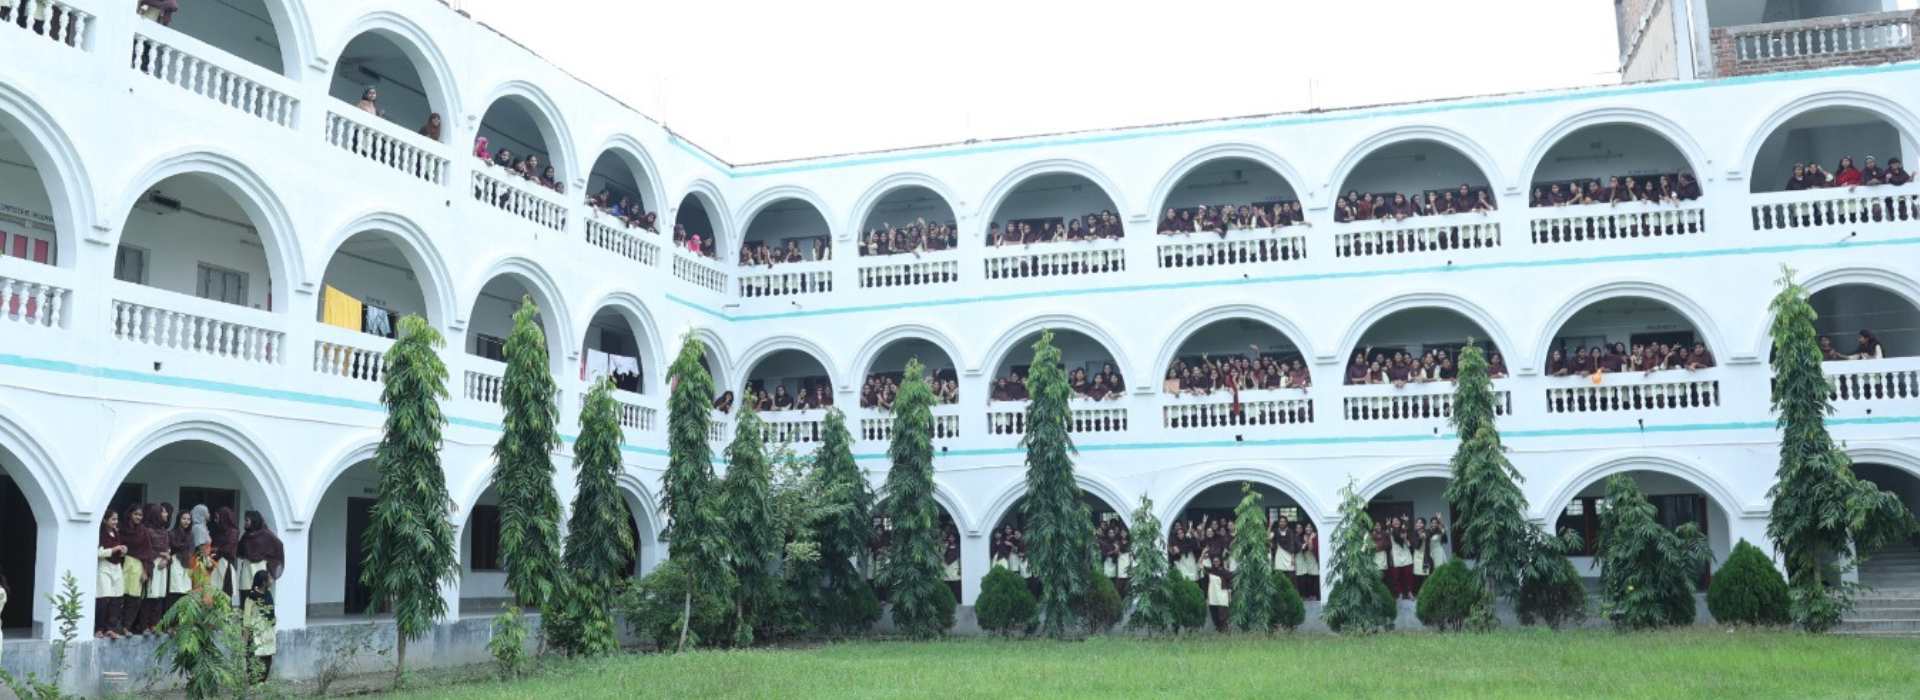 Girls School Building